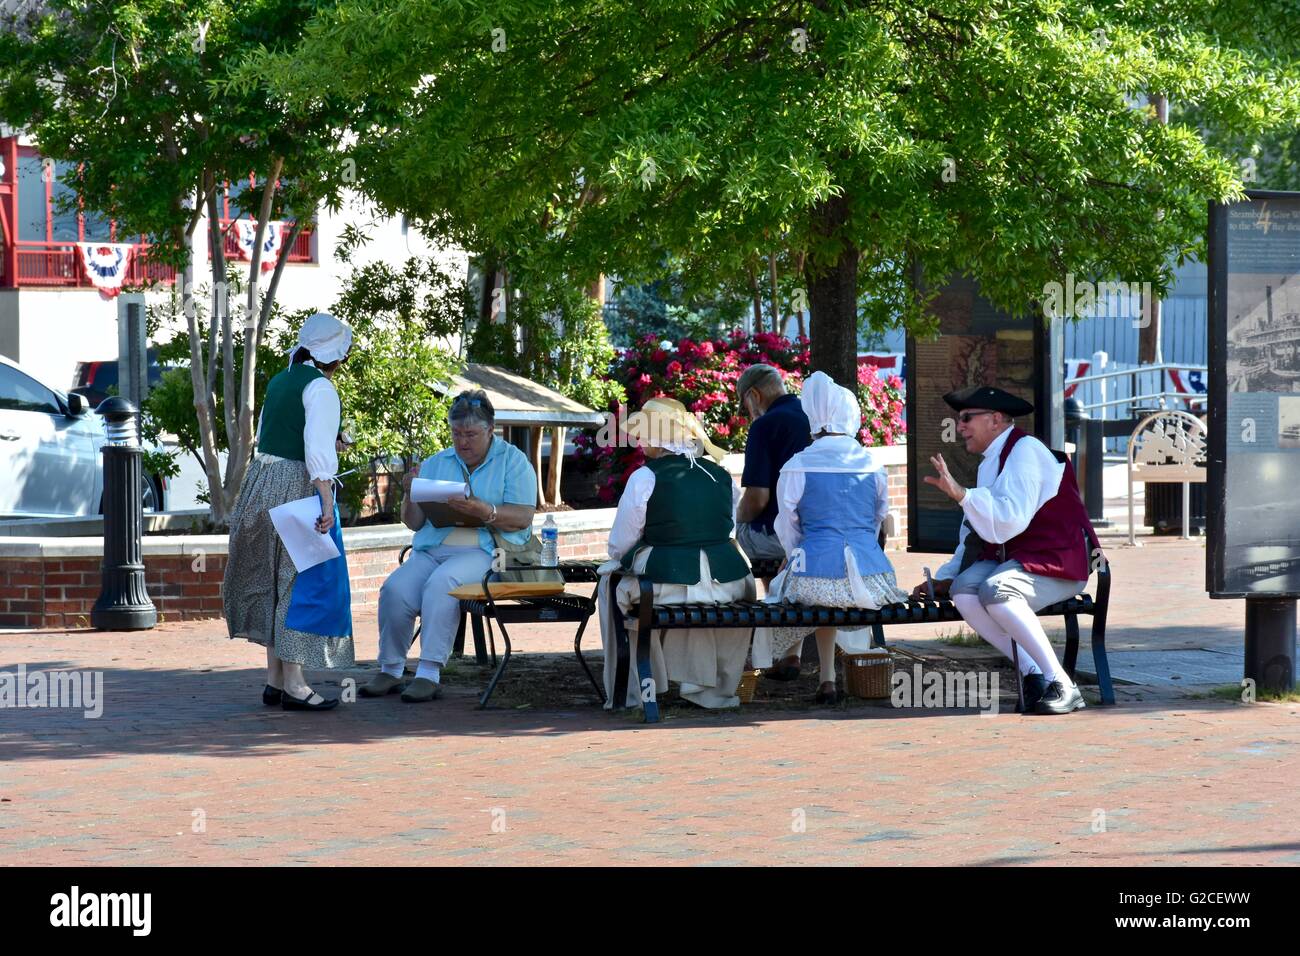 Un groupe d'Amish assis sur un banc de parc Banque D'Images